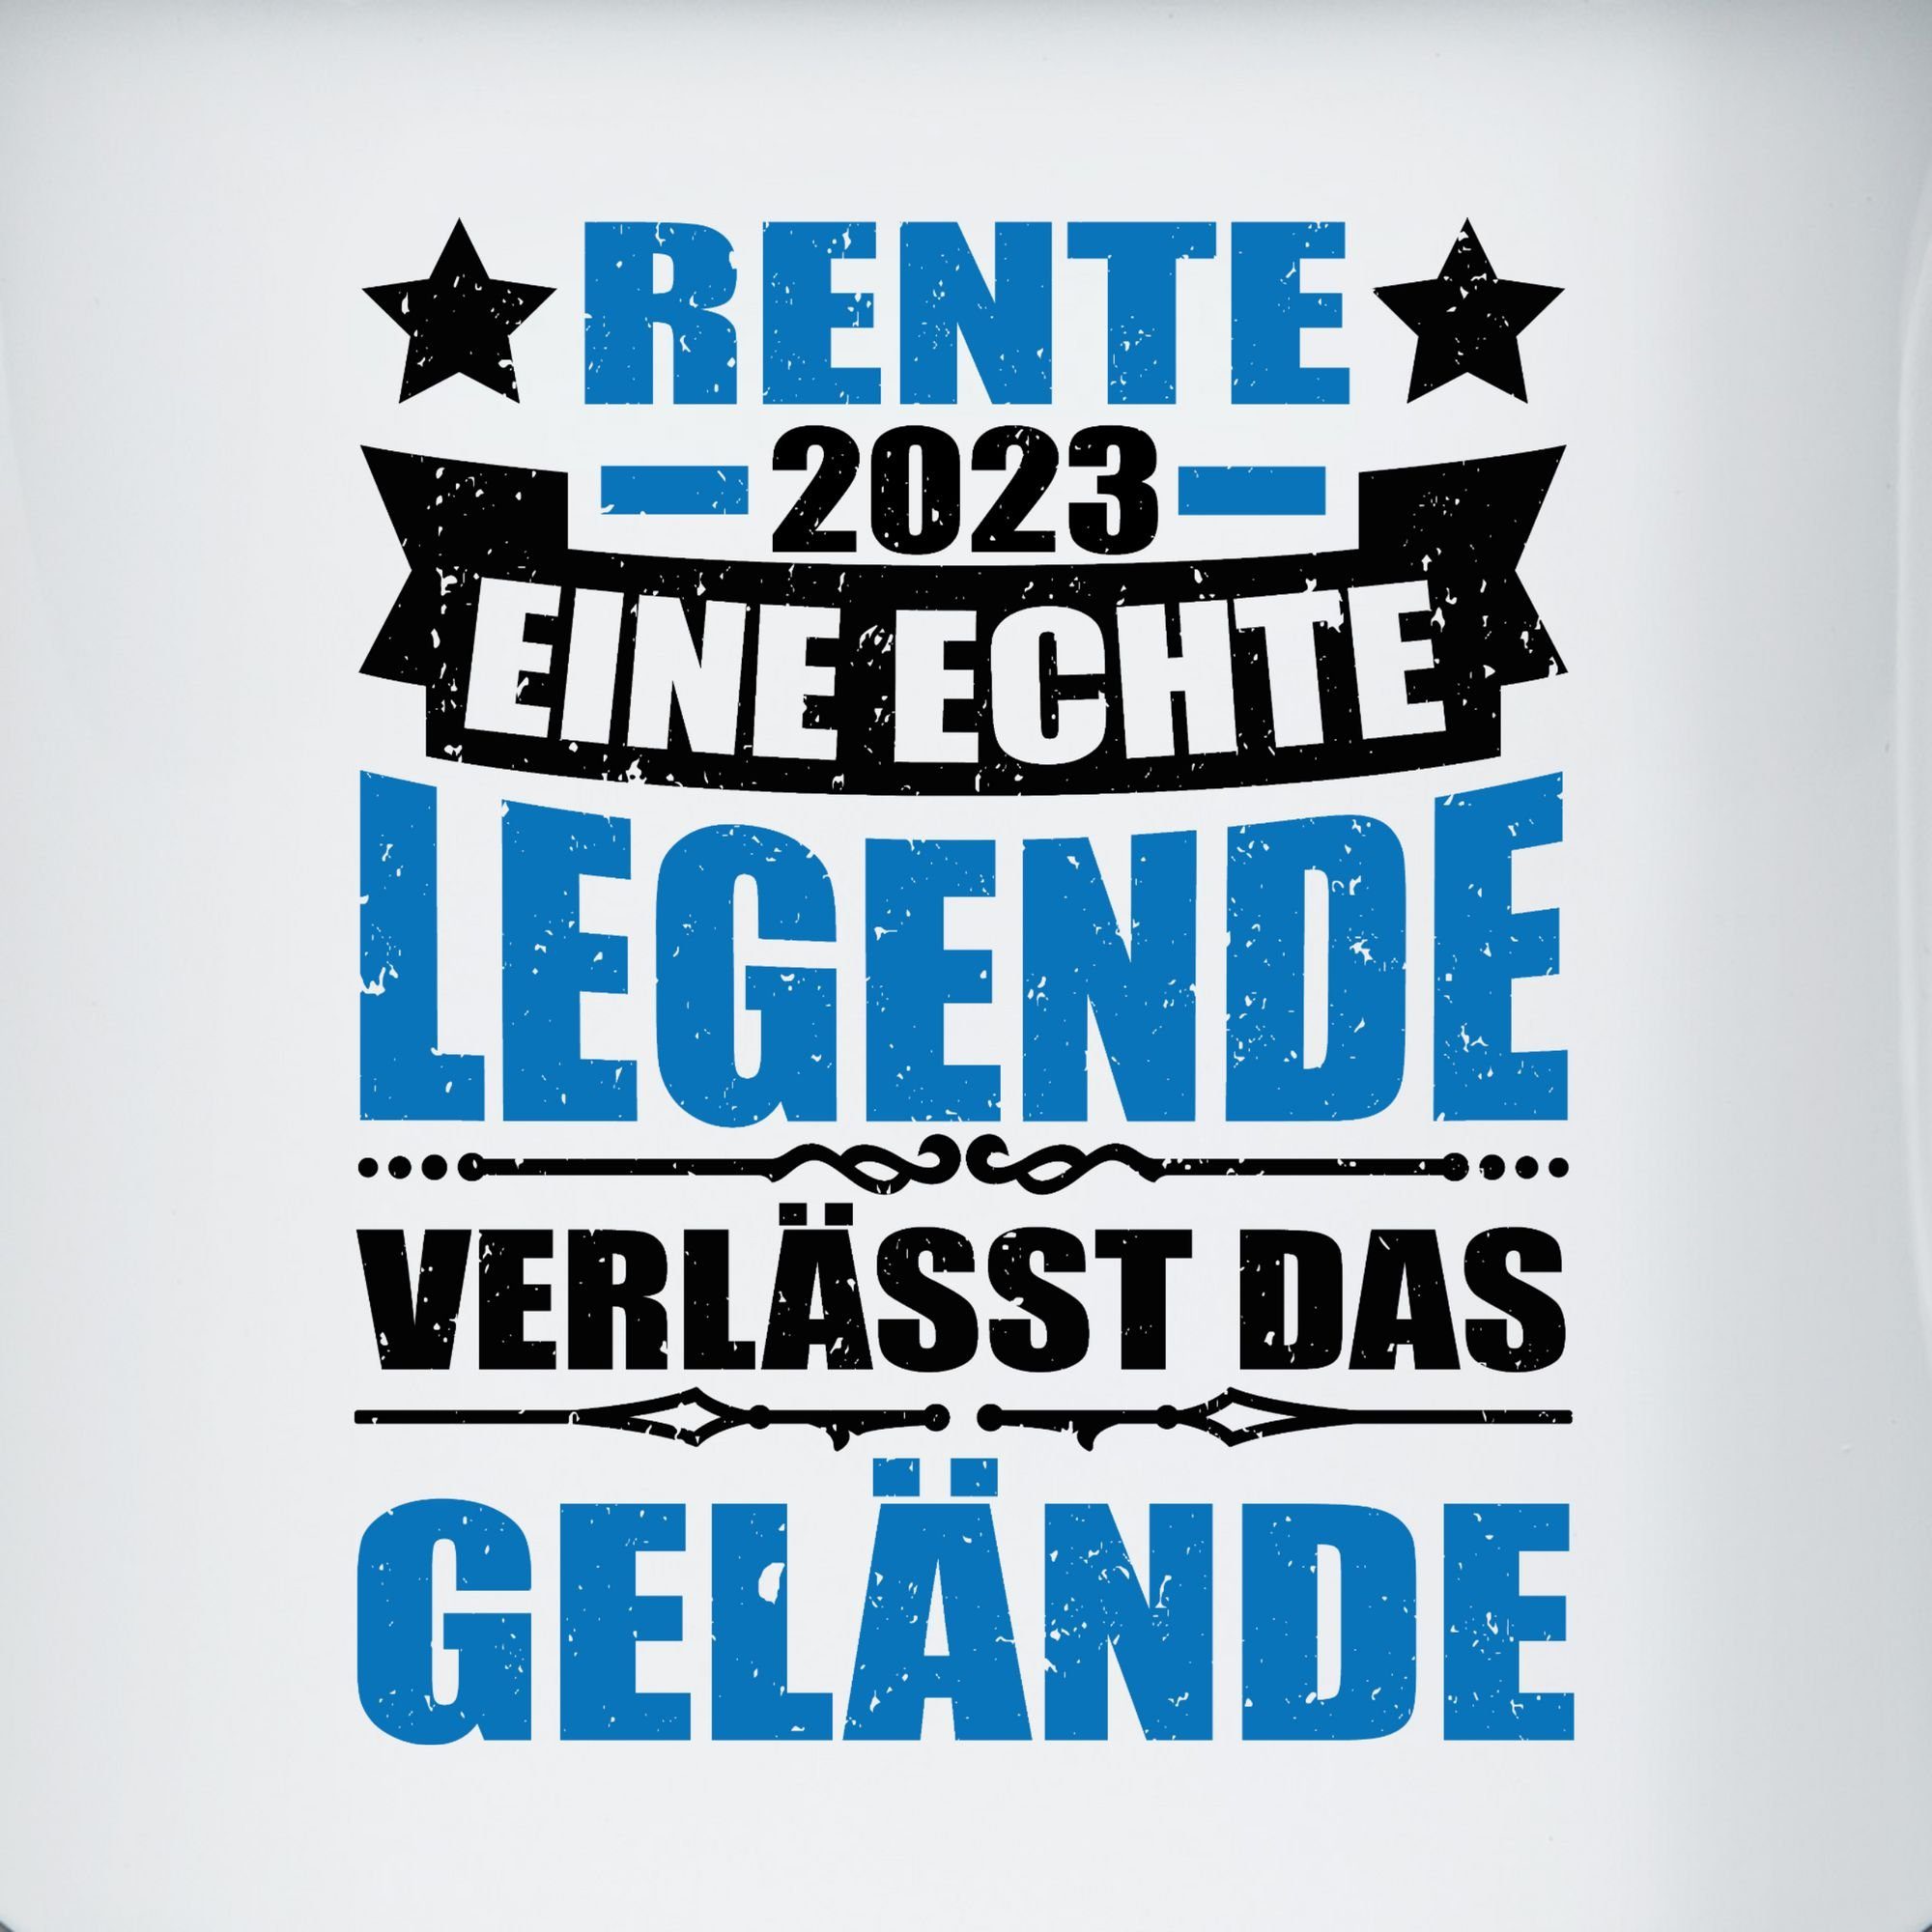 3 Stahlblech, verlässt Shirtracer Blau Tasse Kaffeetasse das Gelände, Geschenk Rente 2023 eine echte Rente Weiß Legende